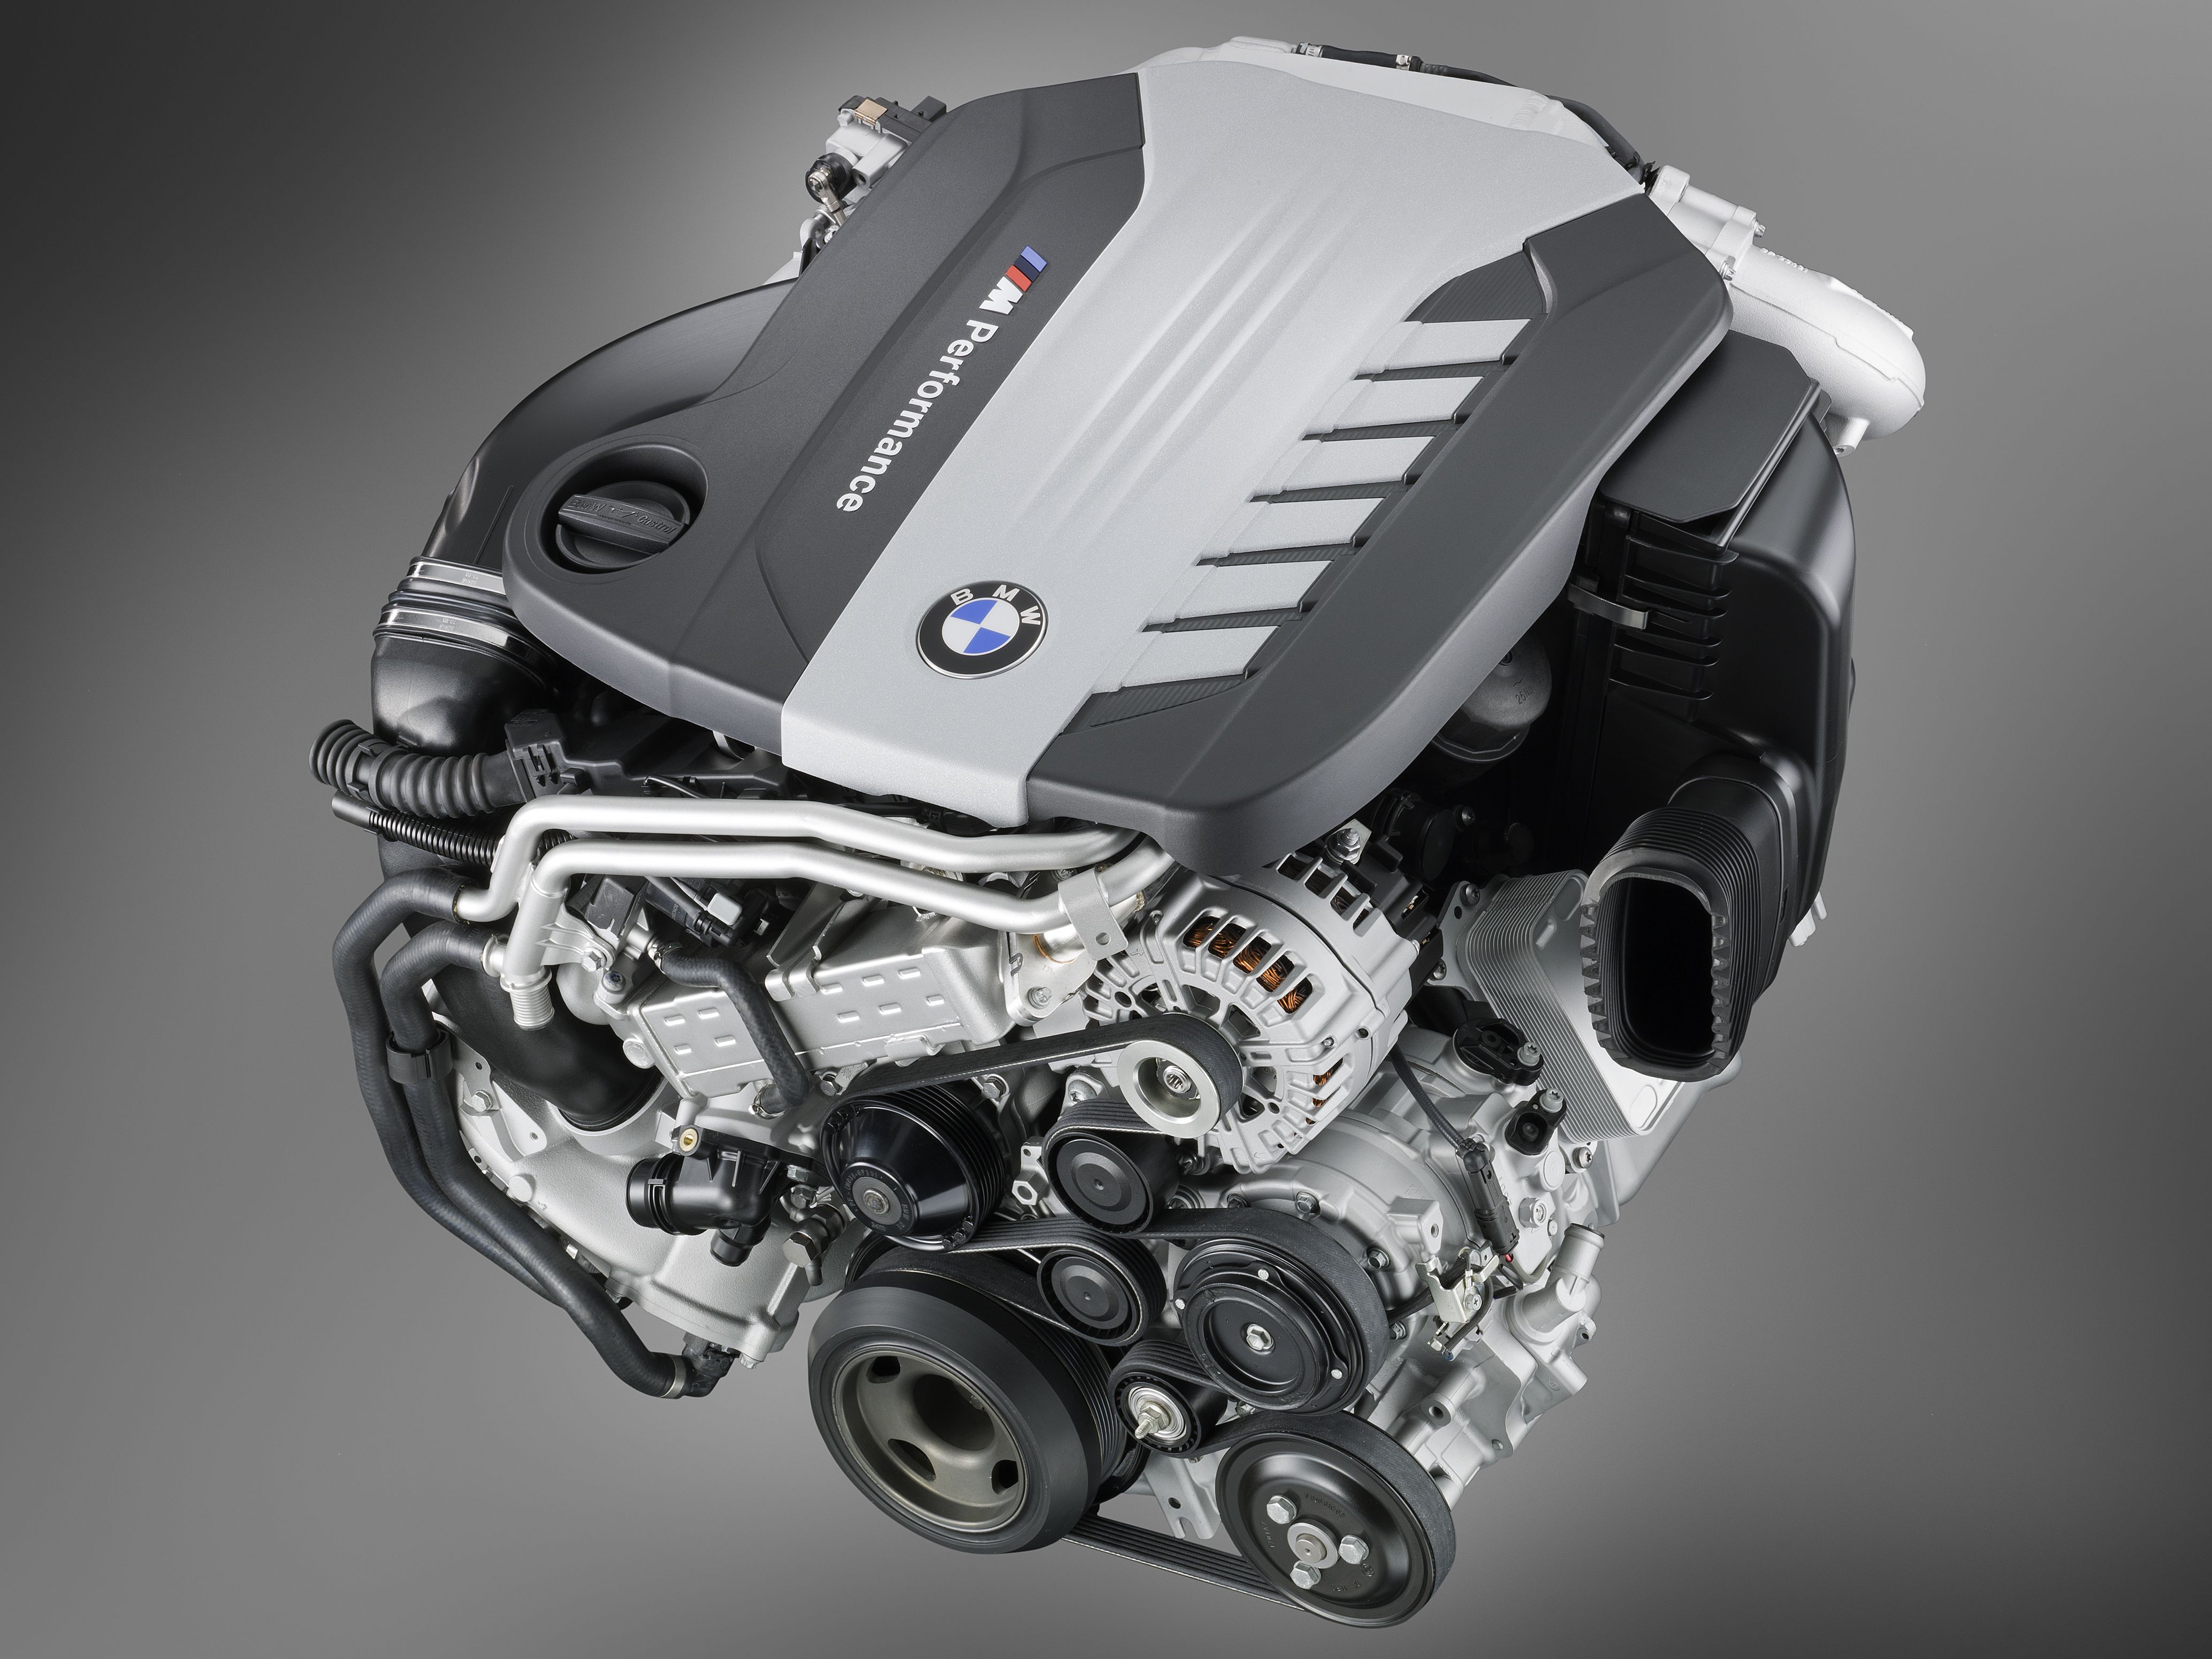 Двигатель автомобиля бмв. BMW n57s Diesel. N57s двигатель. Дизельный мотор БМВ. Мотор мотор мотор БМВ.